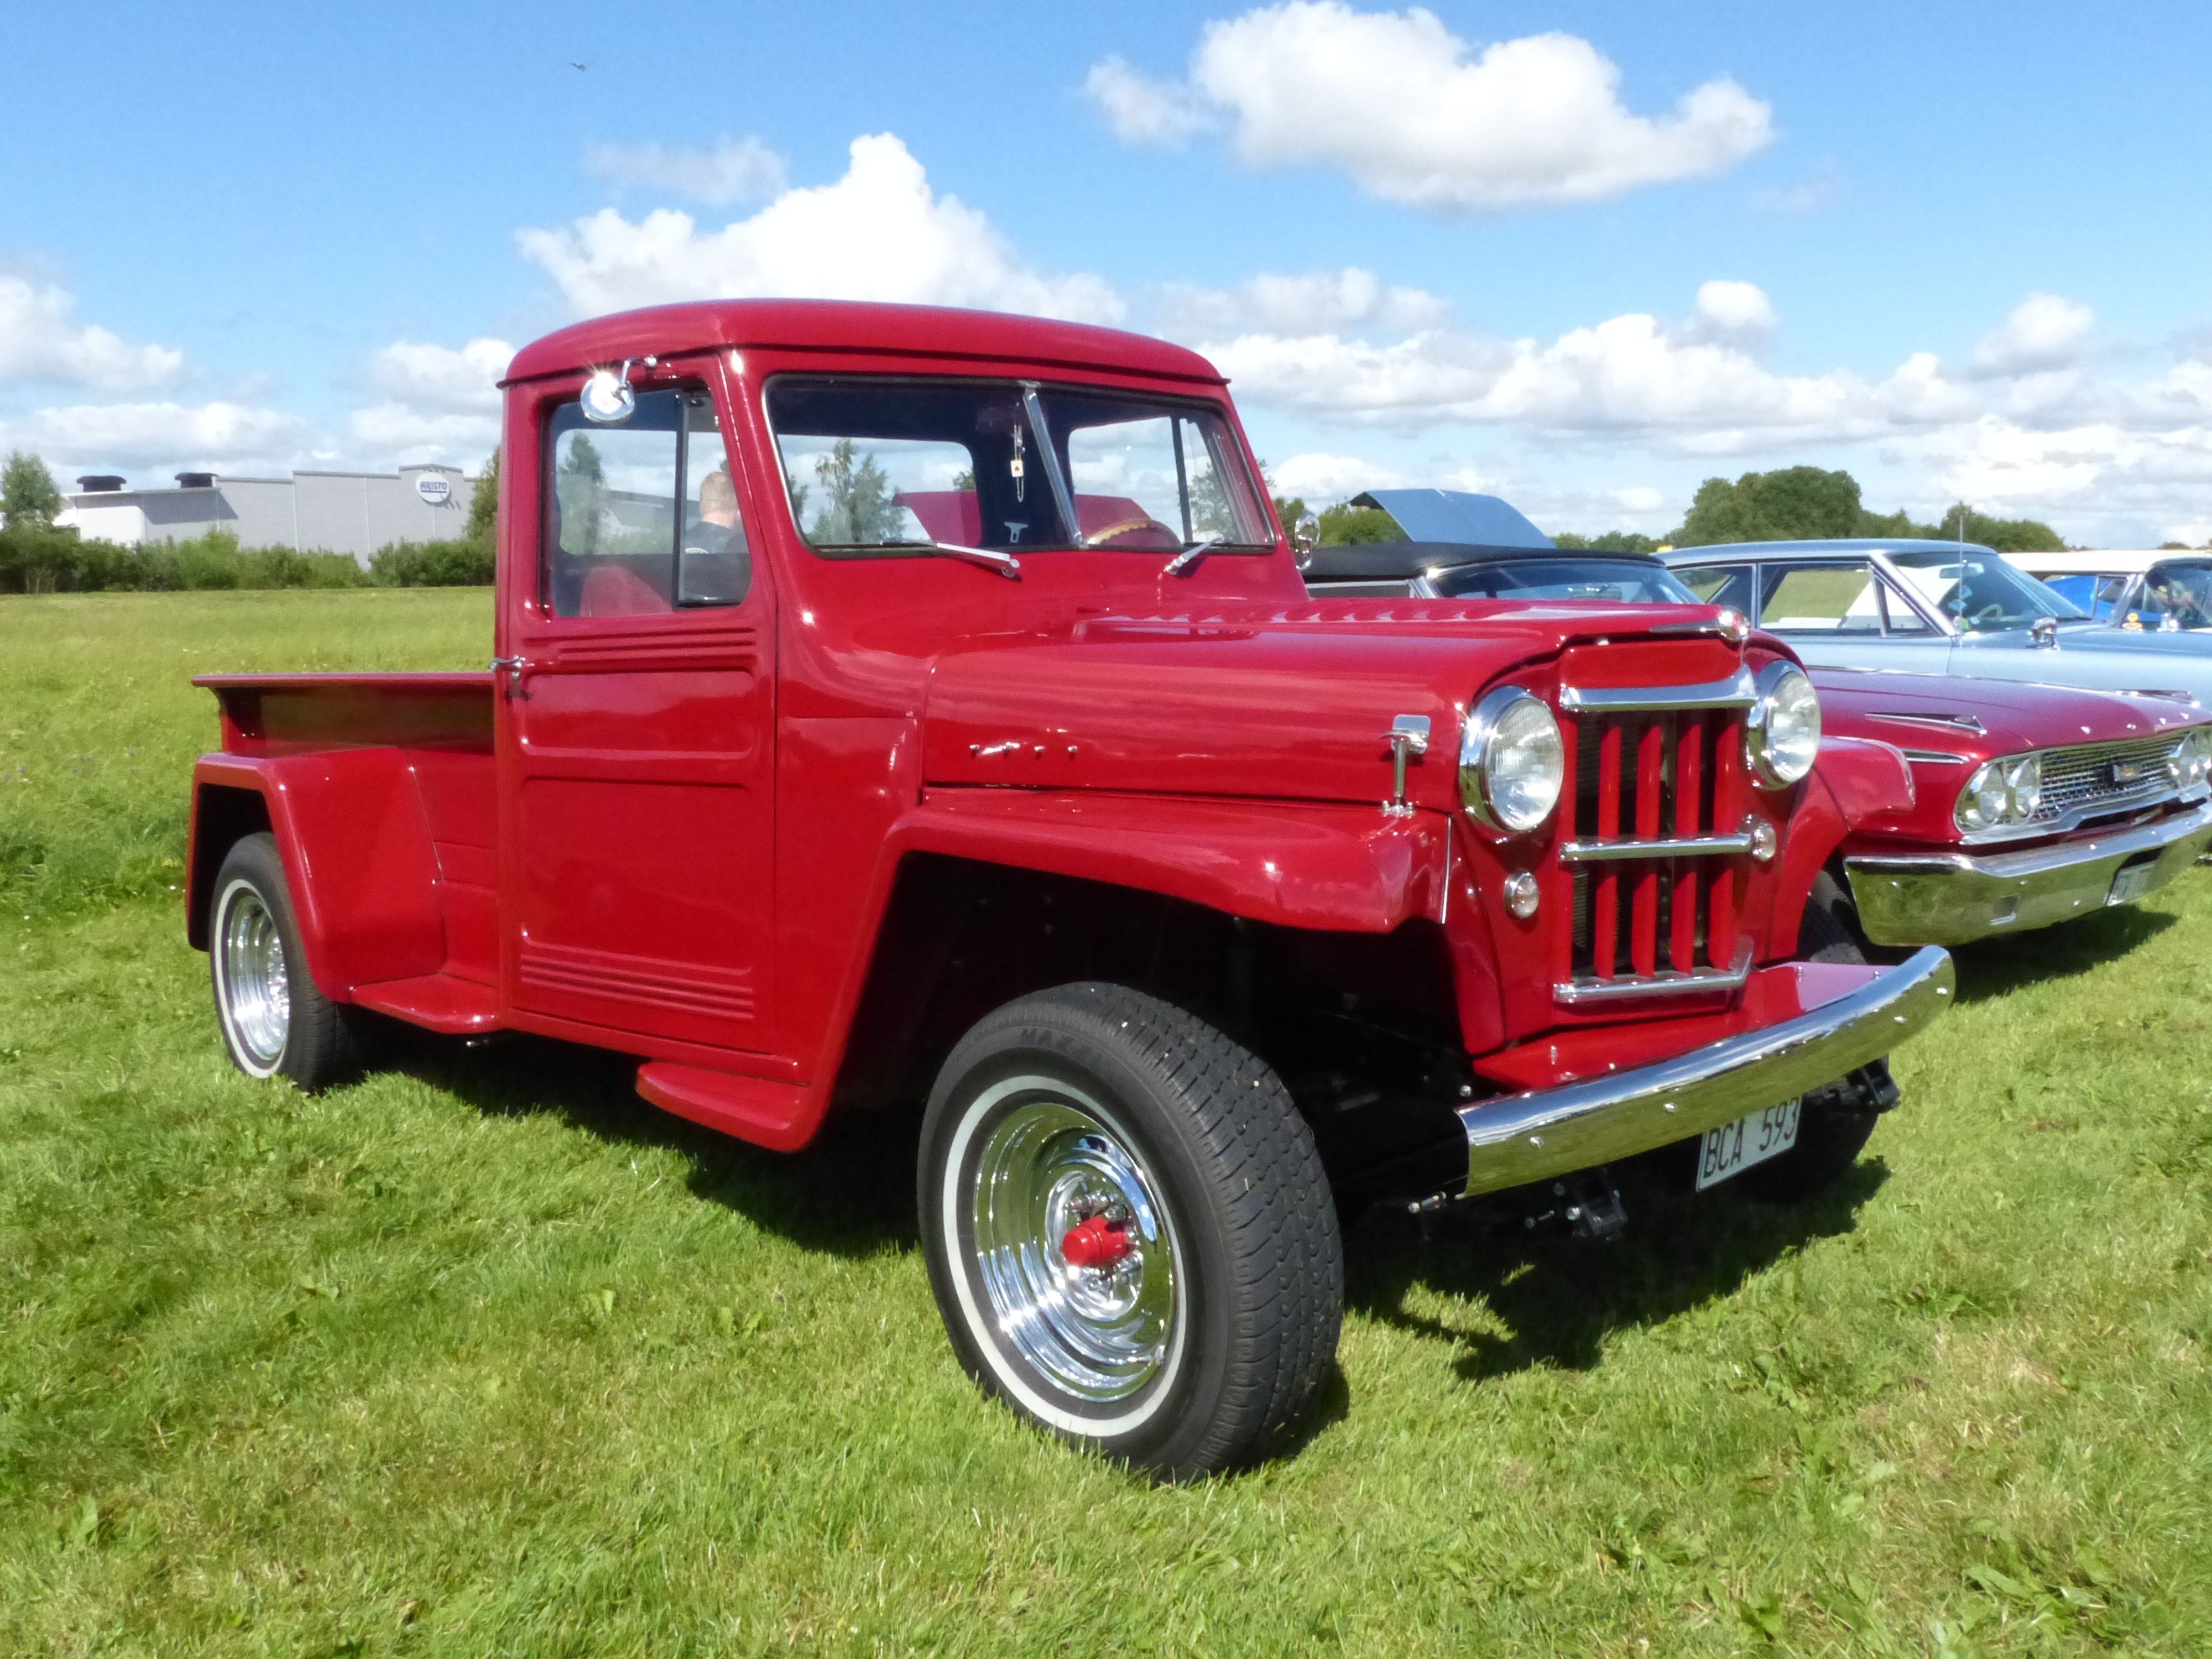 red vintage pick-up